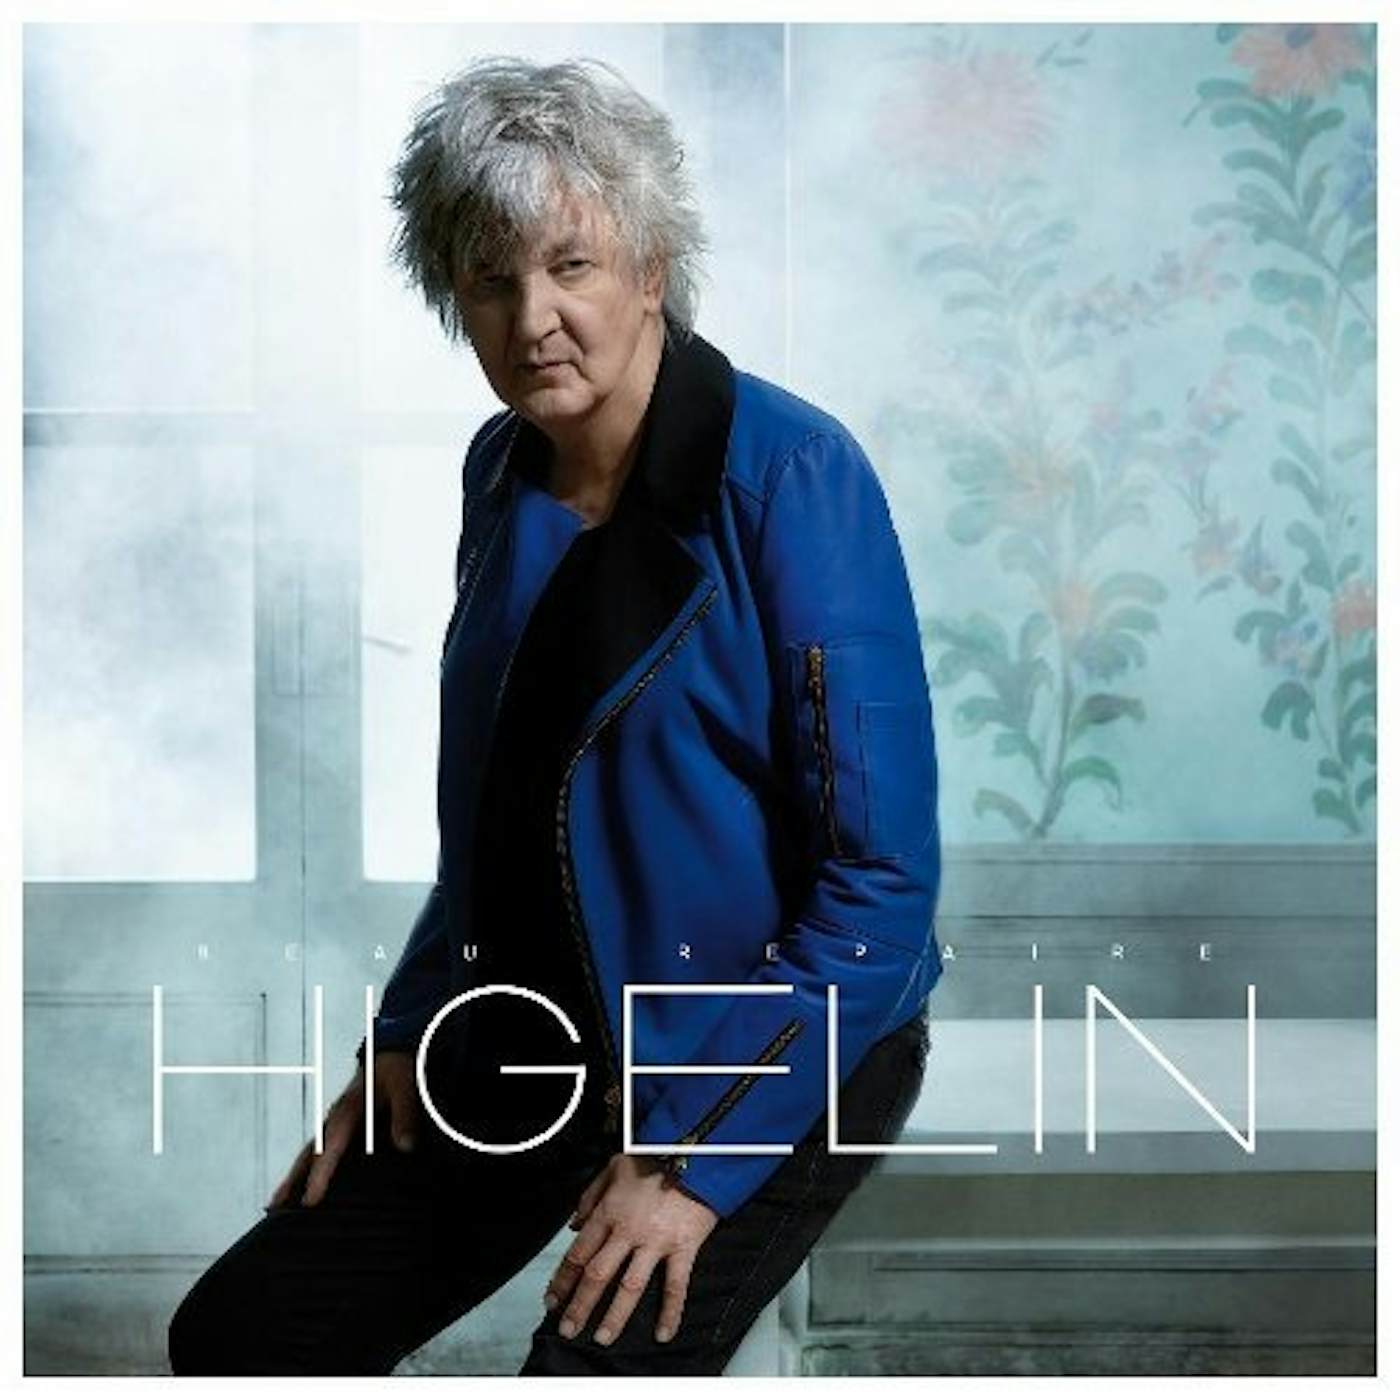 LP 2013-JACQUES HIGELIN CD